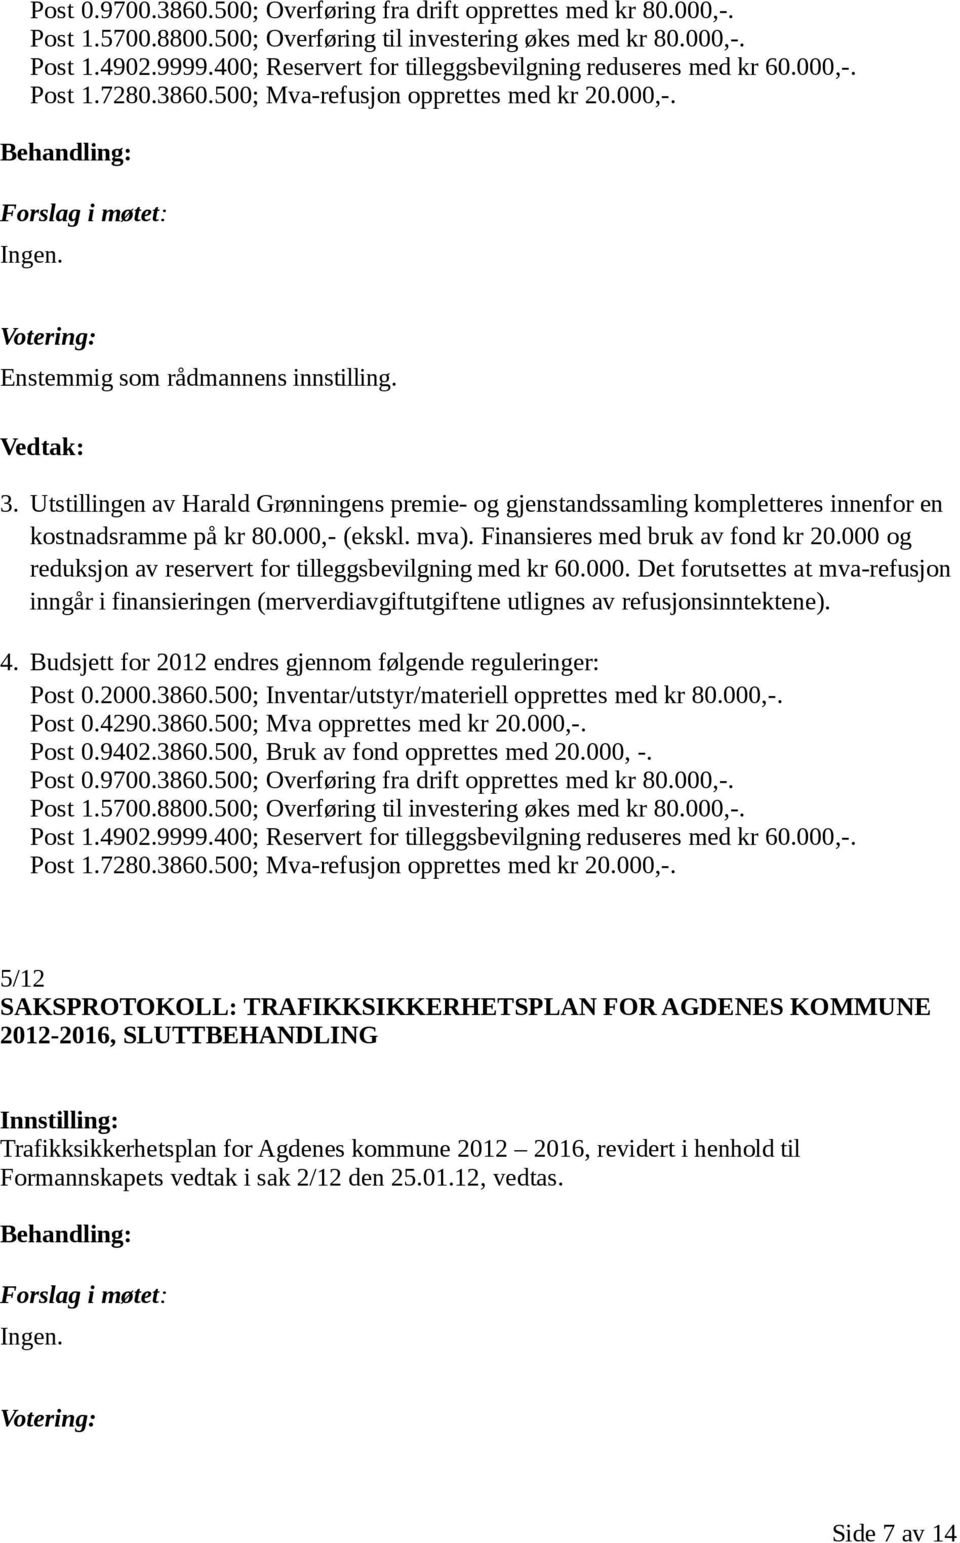 Utstillingen av Harald Grønningens premie- og gjenstandssamling kompletteres innenfor en kostnadsramme på kr 80.000,- (ekskl. mva). Finansieres med bruk av fond kr 20.